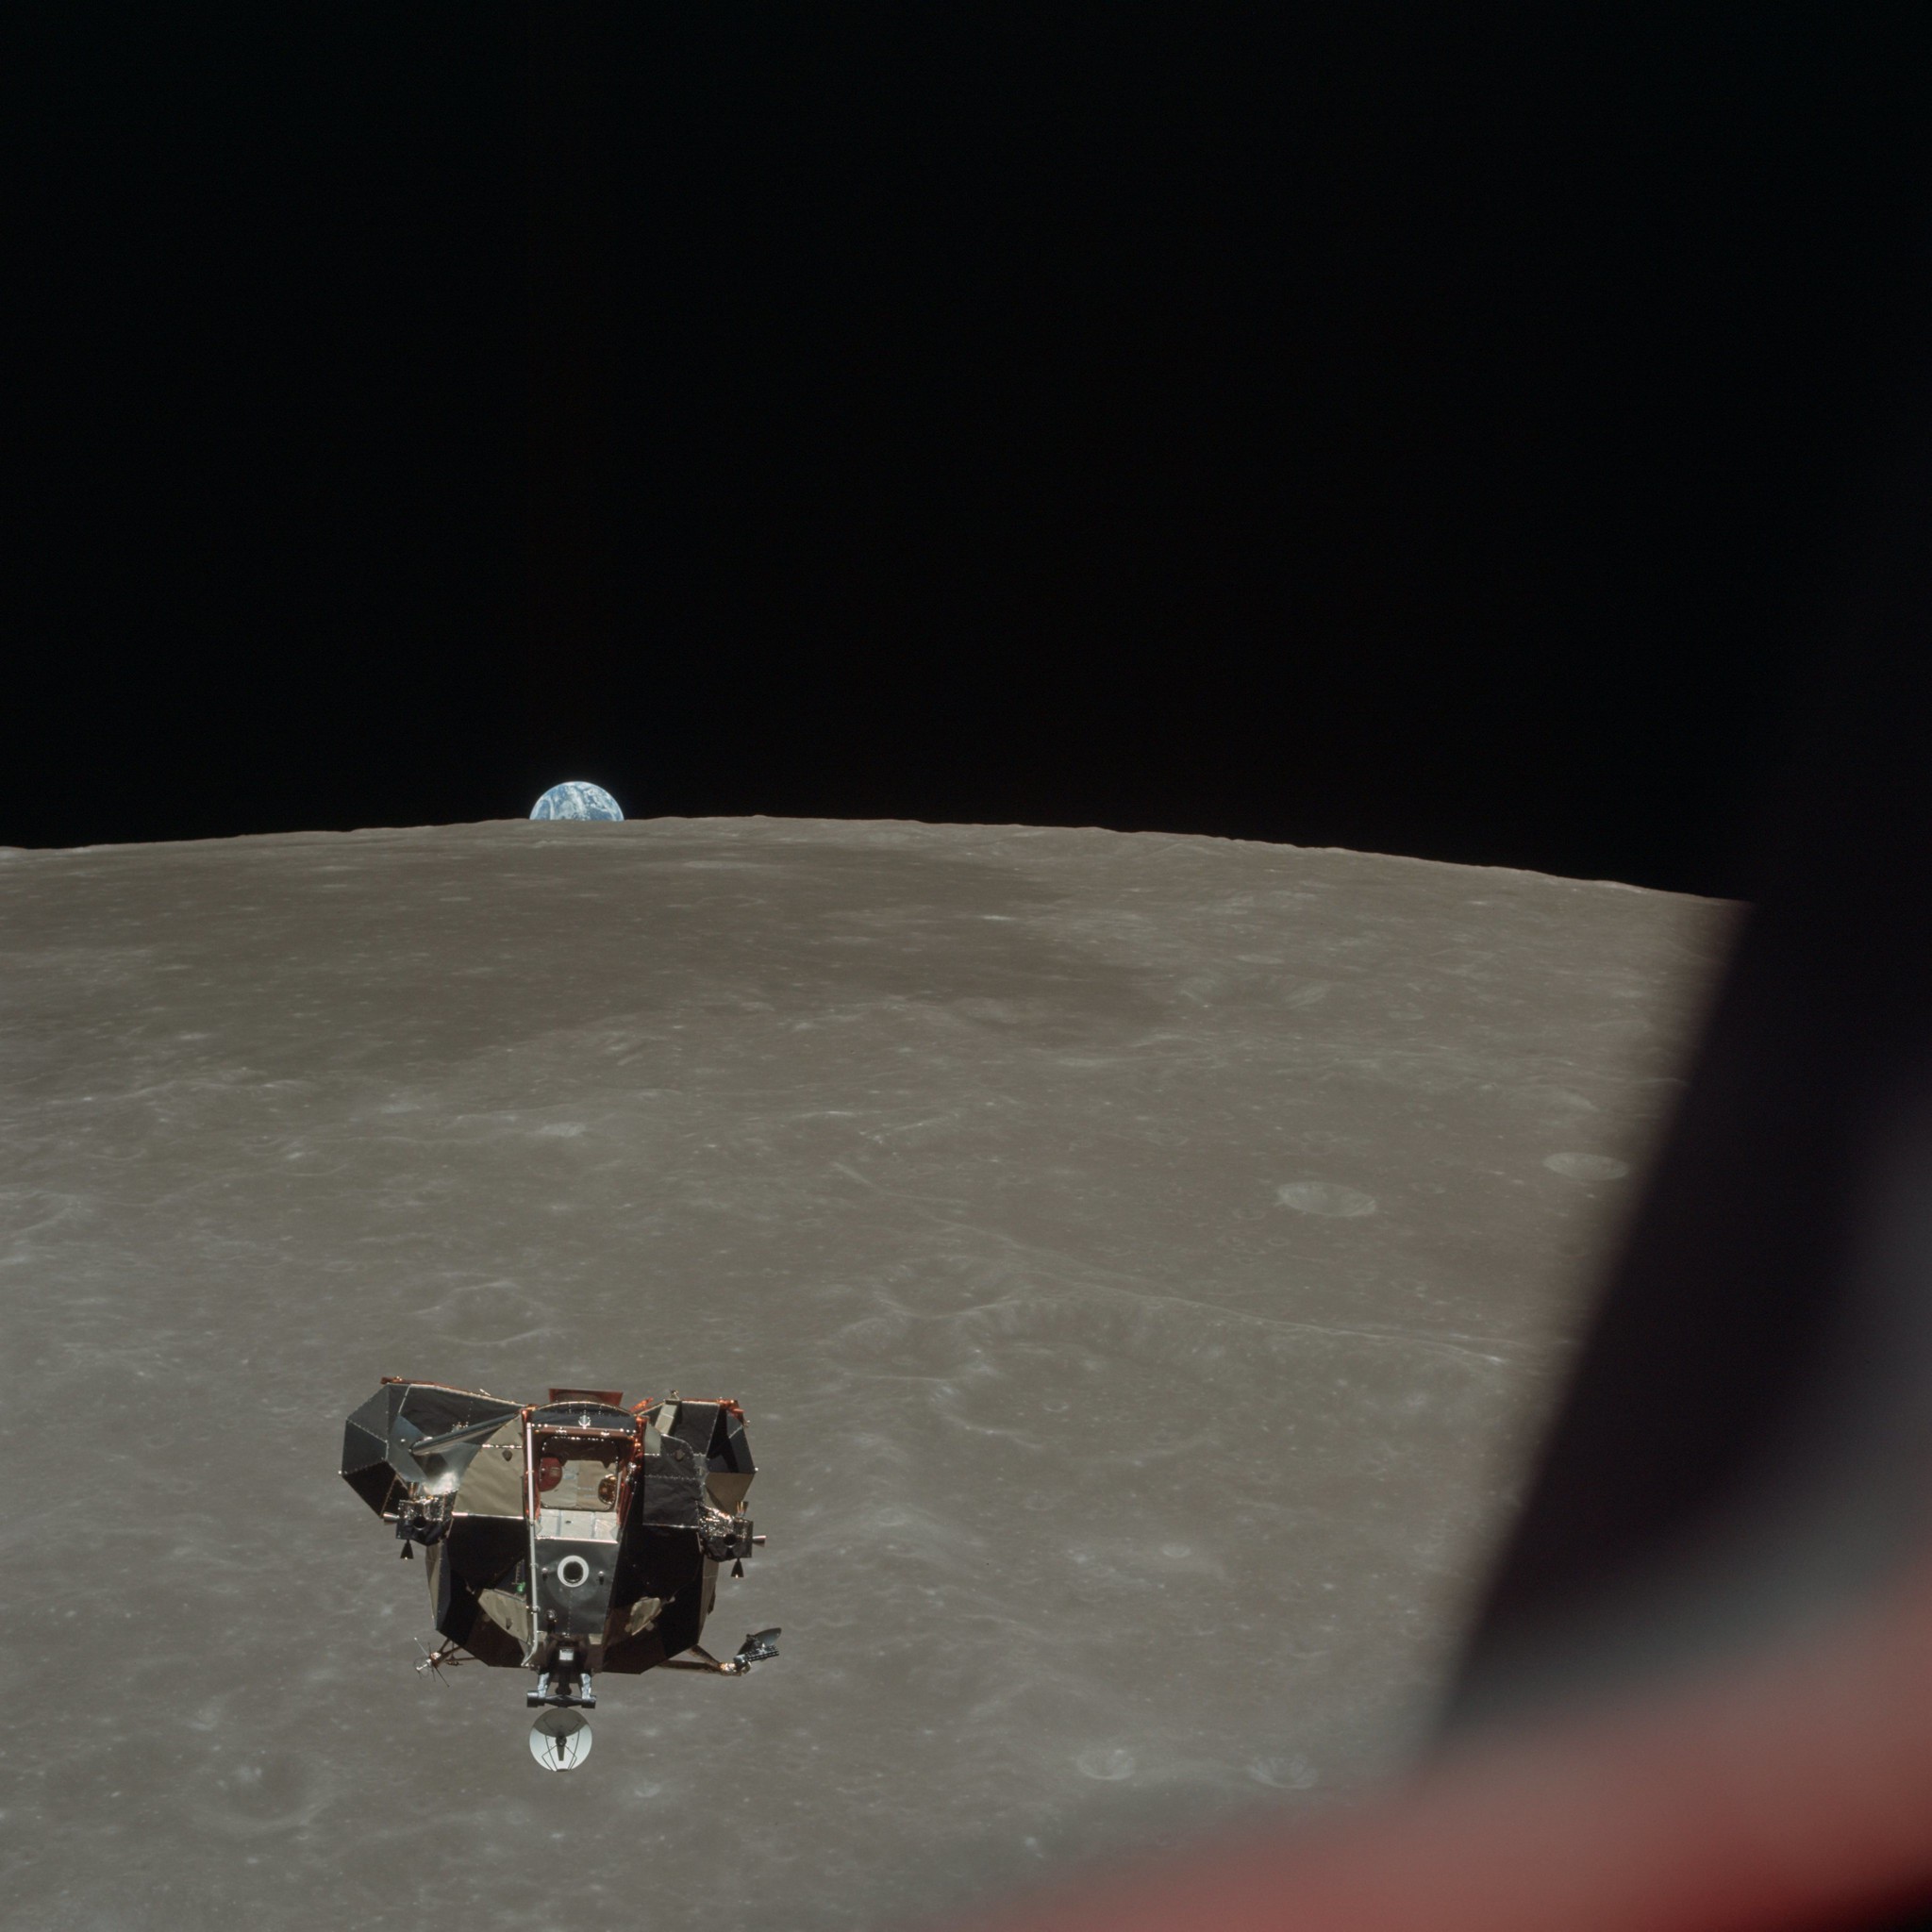 Fotografija lunarnog modula pri slijetanju na površinu Mjeseca. Fotografiju je slikao pilot komandnog modula Michael Collins, koji je u njemu ostao za vrijeme trajanja cijele misije. Aldrin i Armstrong su se s lunarnim modulom spustili na površinu Mjeseca.